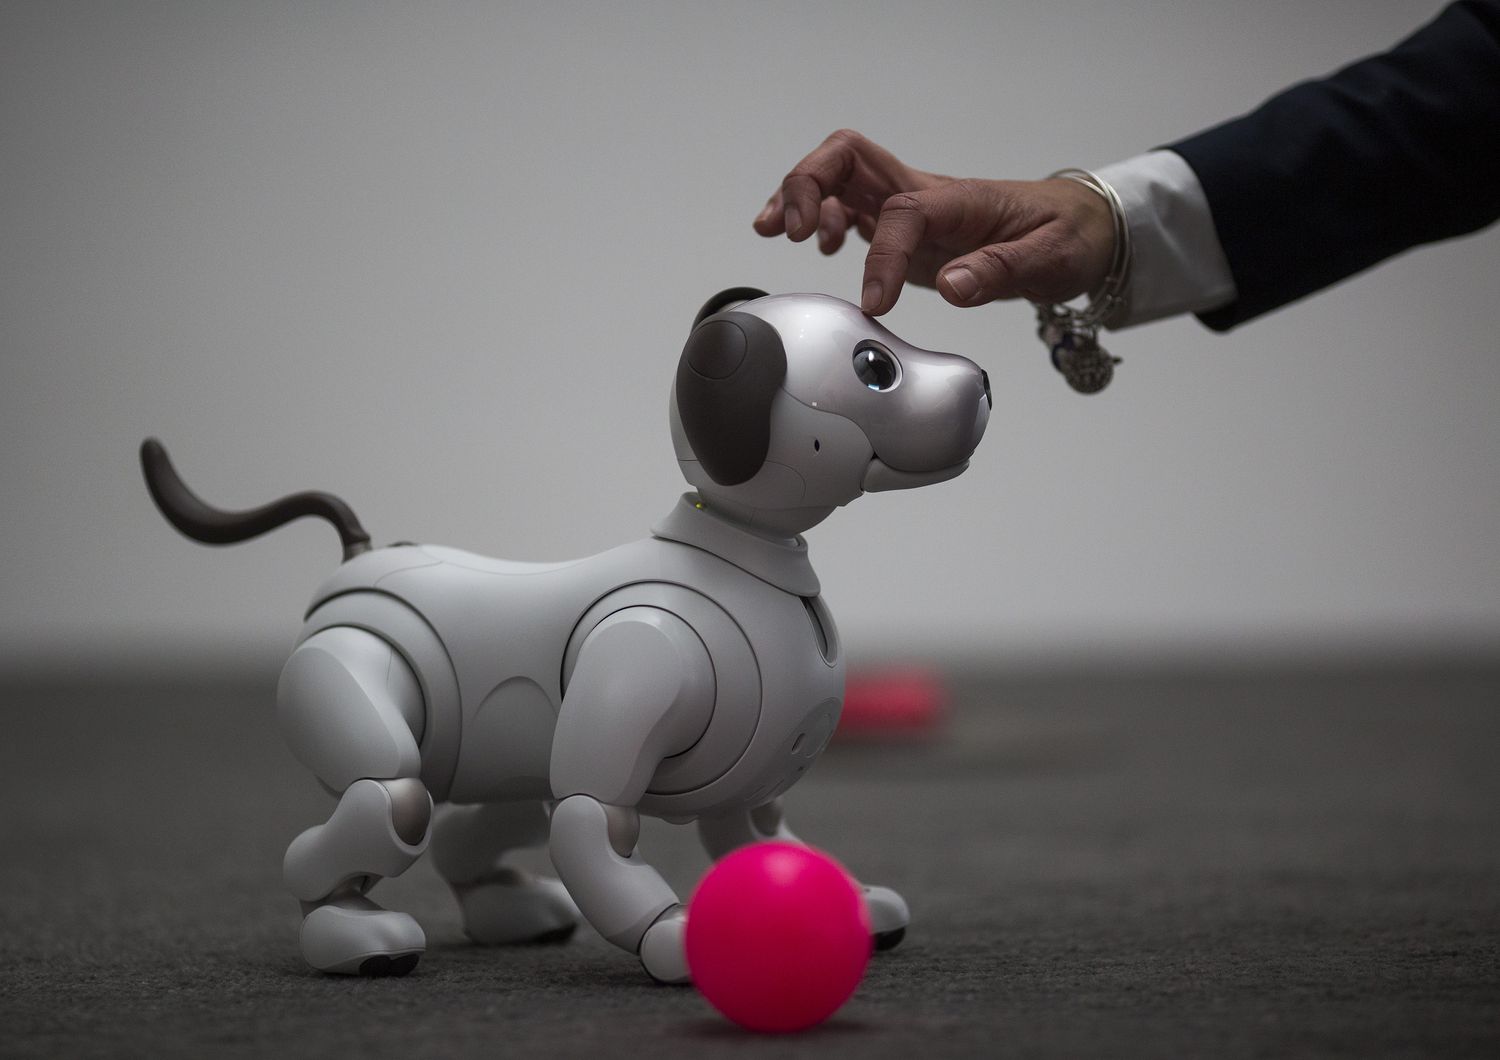 La nuova generazione del robot Aibo, che utilizza intelligenze artificiali